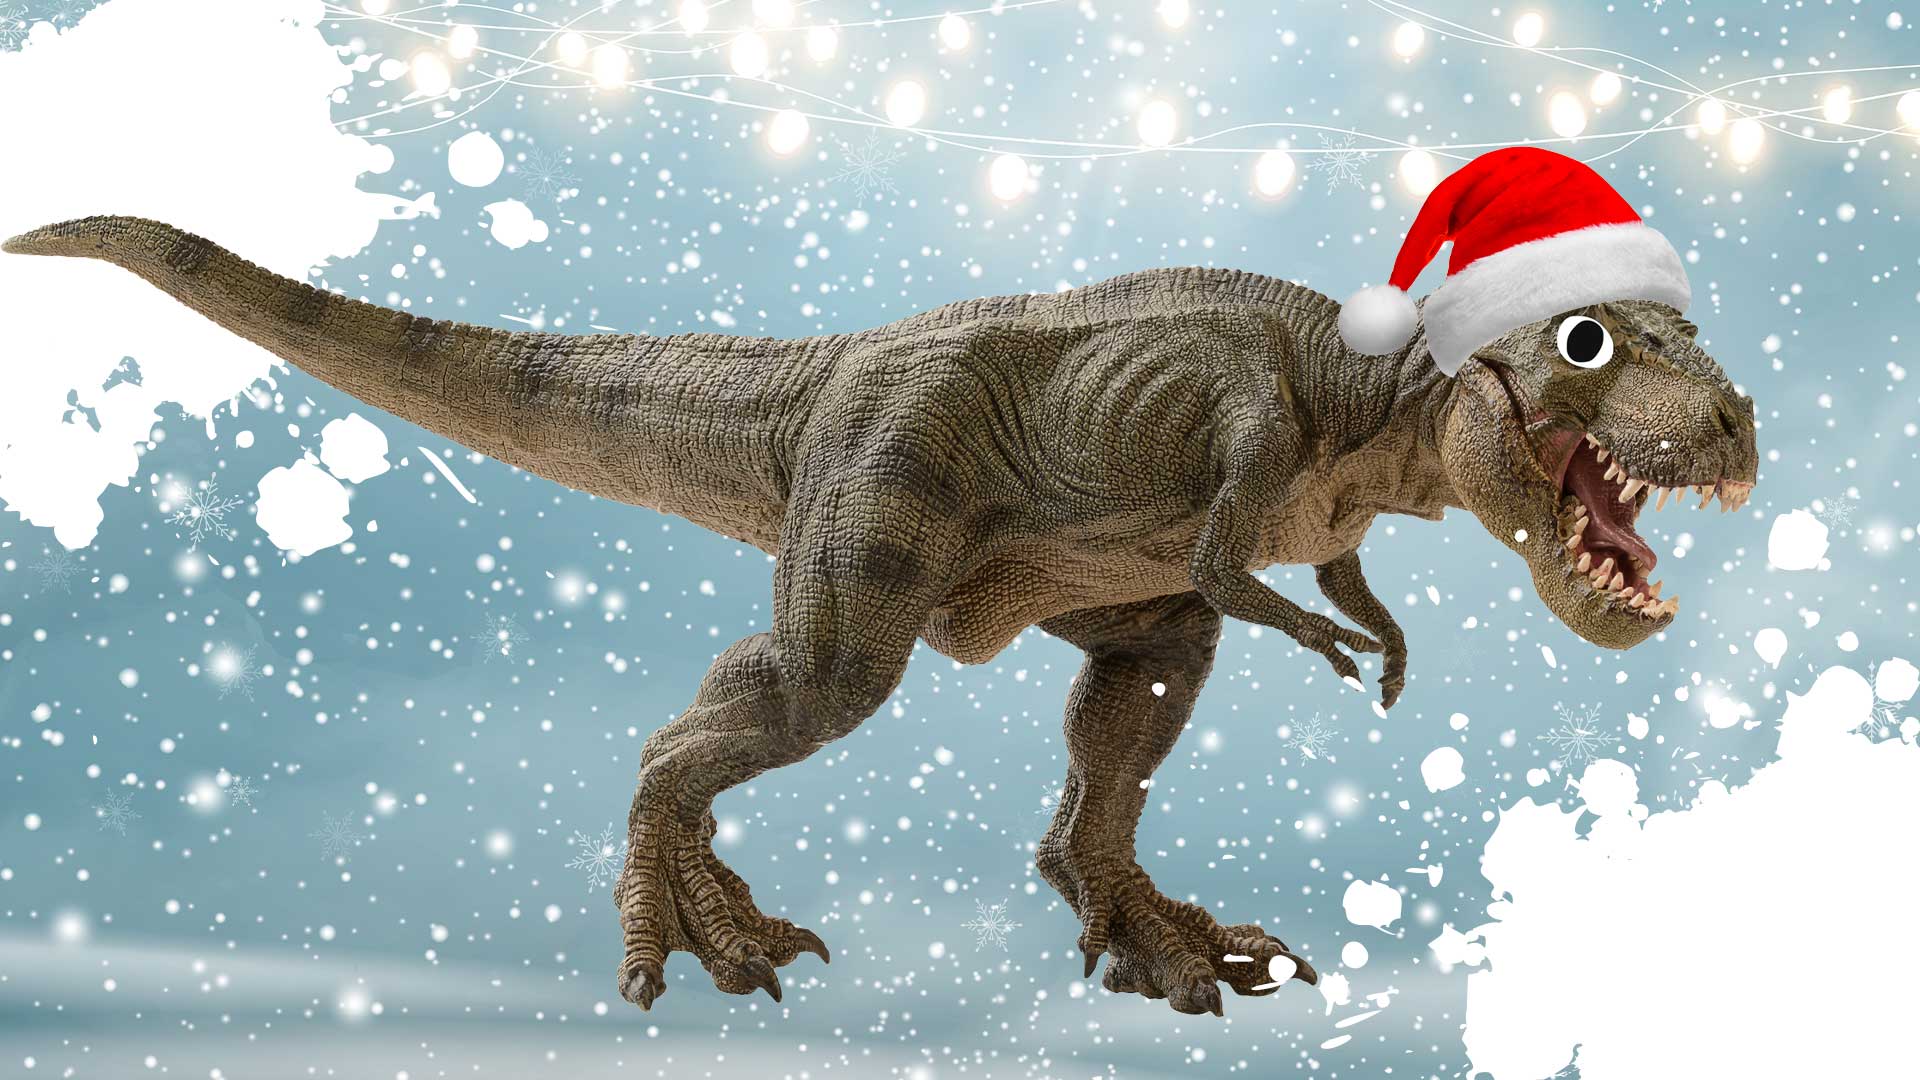 A Christmas dinosaur